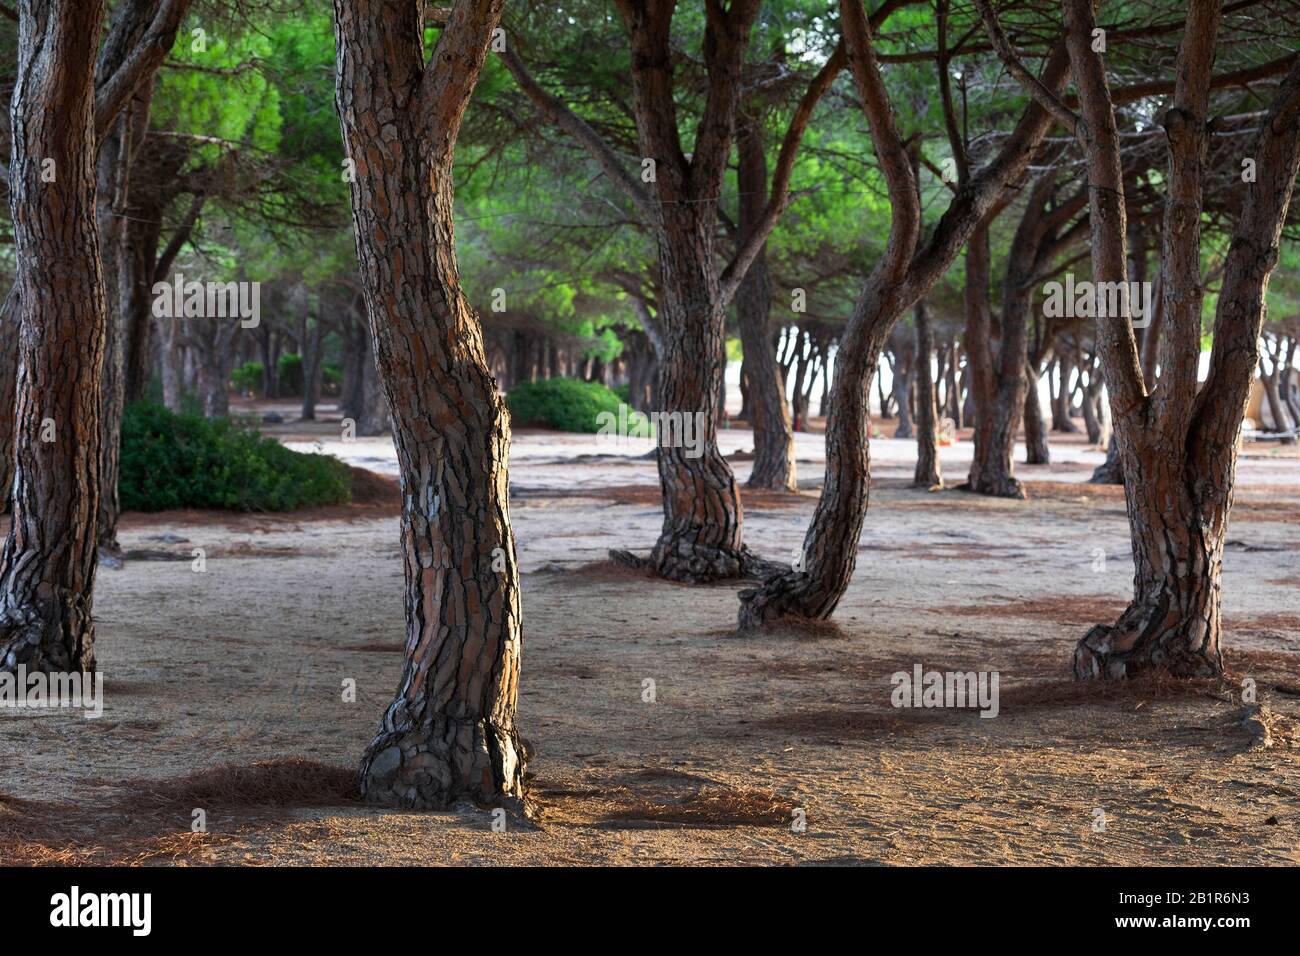 Stone pine, Italian Stone pine, Umbrella Pine (Pinus pinea), Umbrella pine forest at Orosei, Italy, Sardegna Stock Photo